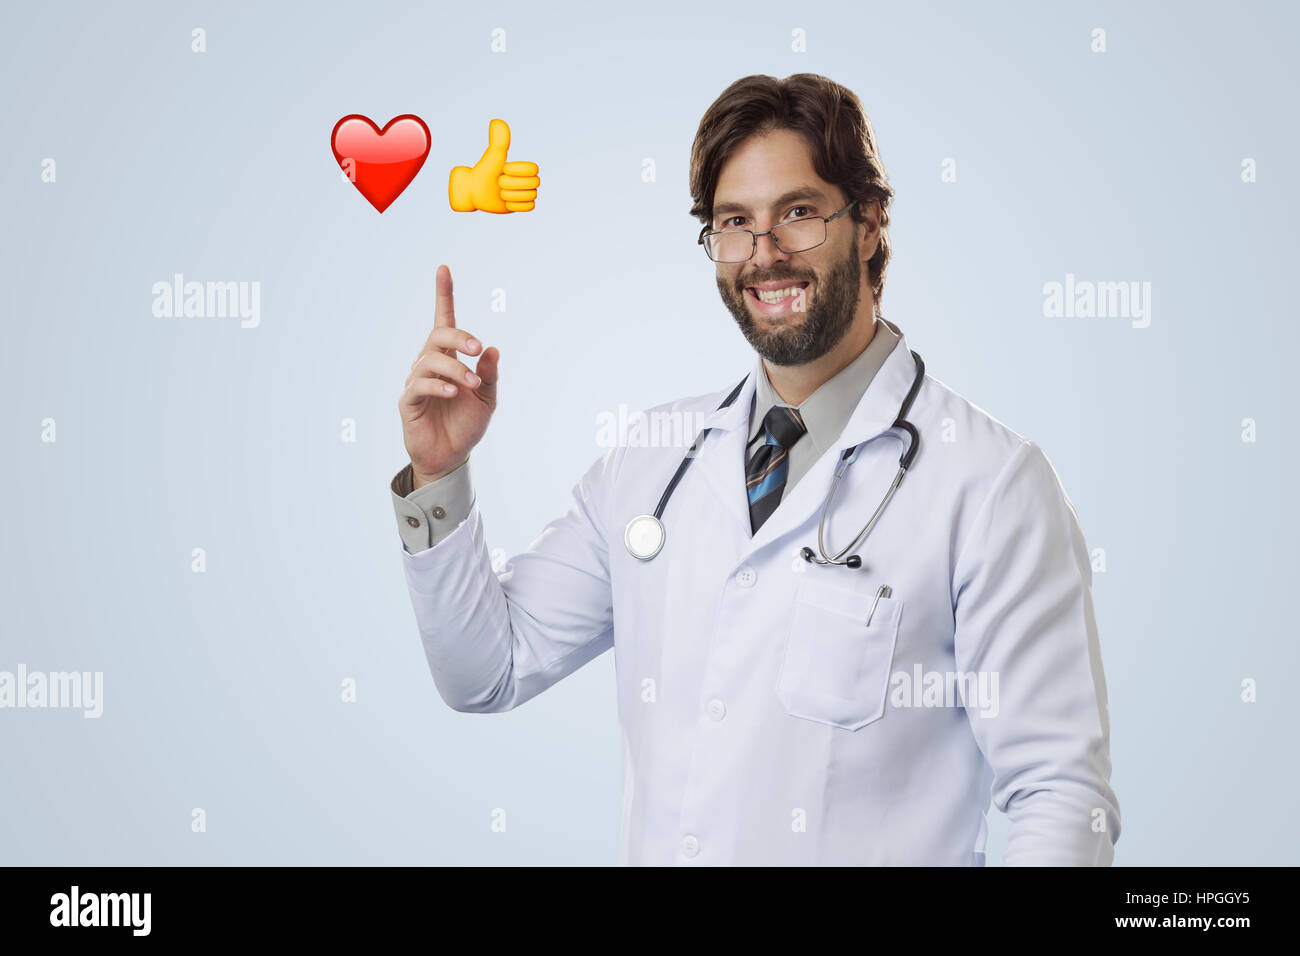 Männlichen Arzt auf einem grauen Hintergrund deuten einige Emojis. Stockfoto